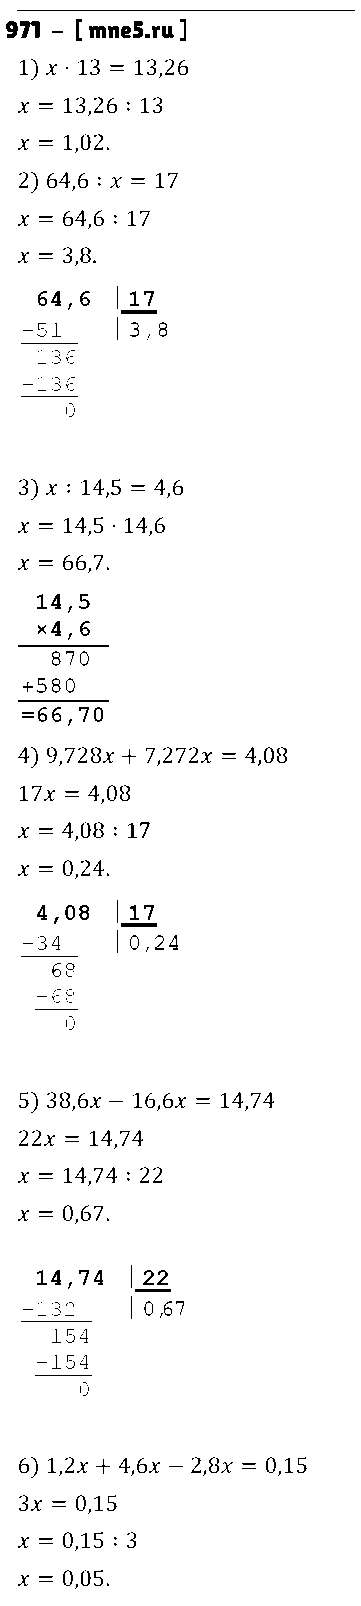 ГДЗ Математика 5 класс - 971